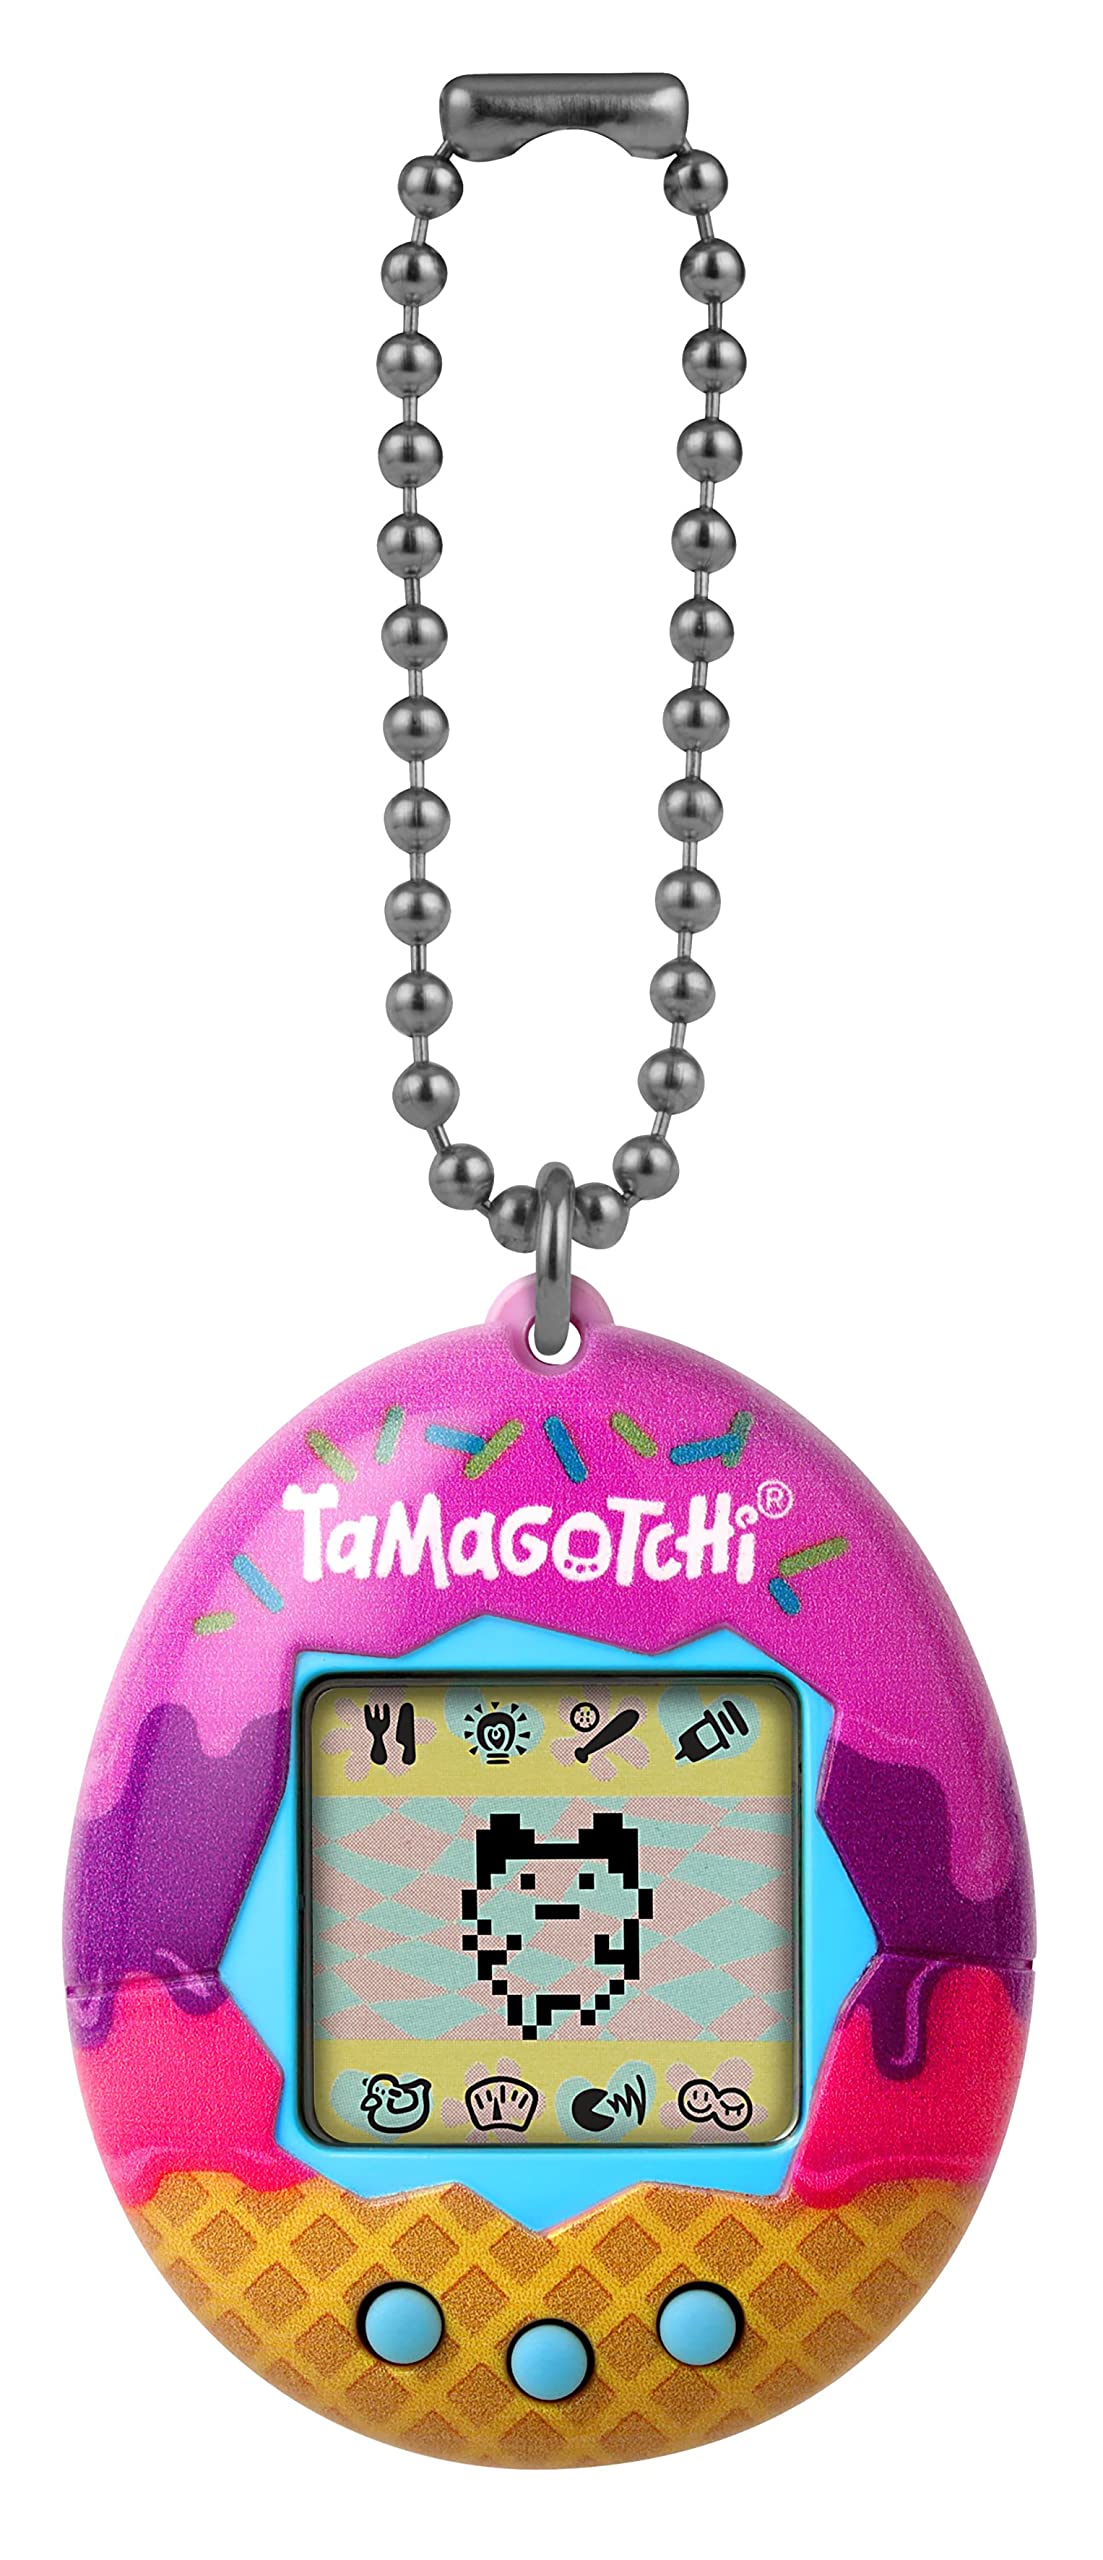 acheter Bandai - Tamagotchi - Tamagotchi original - Ice Cream - Animal électronique virtuel avec écran, 3 boutons et jeux - 42922 fKujOUG8t Outlet Shop 